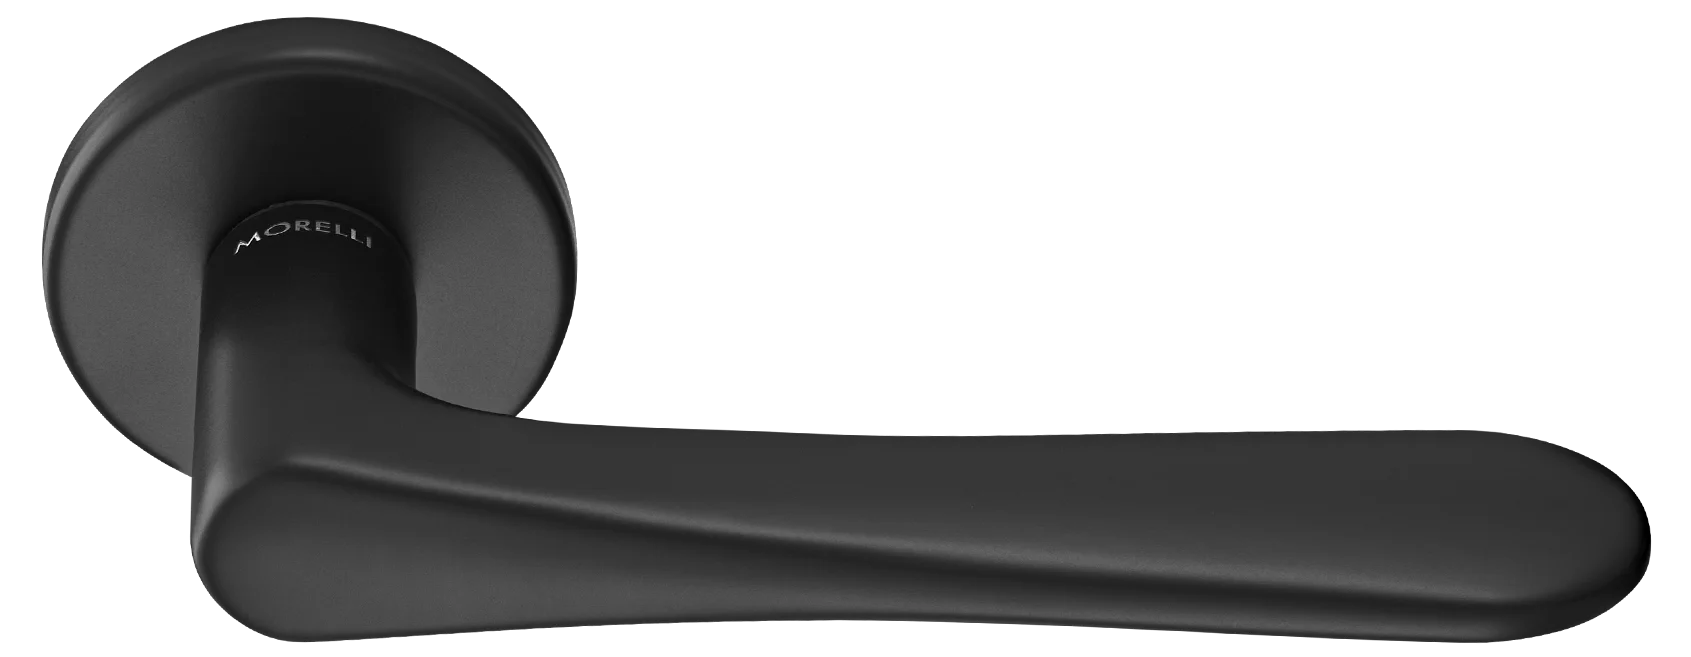 AULA R5 NERO, ручка дверная на розетке 7мм, цвет -  черный фото купить Калининград